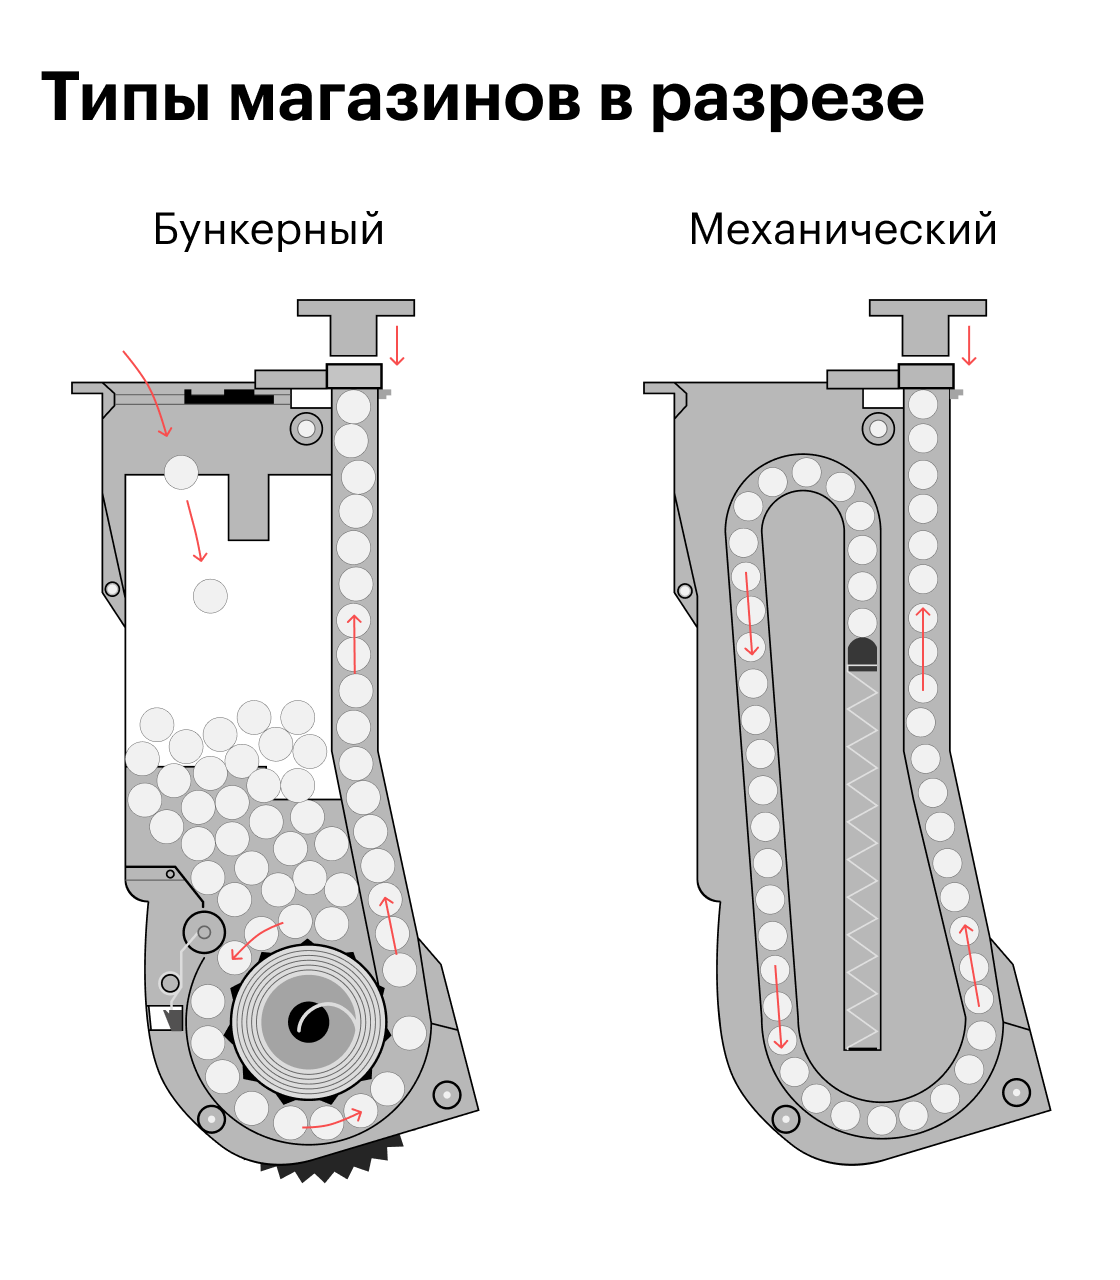 Схема разных типов магазинов в разрезе. Слева — бункер, справа — механ. Источник: hotairsoft.ru